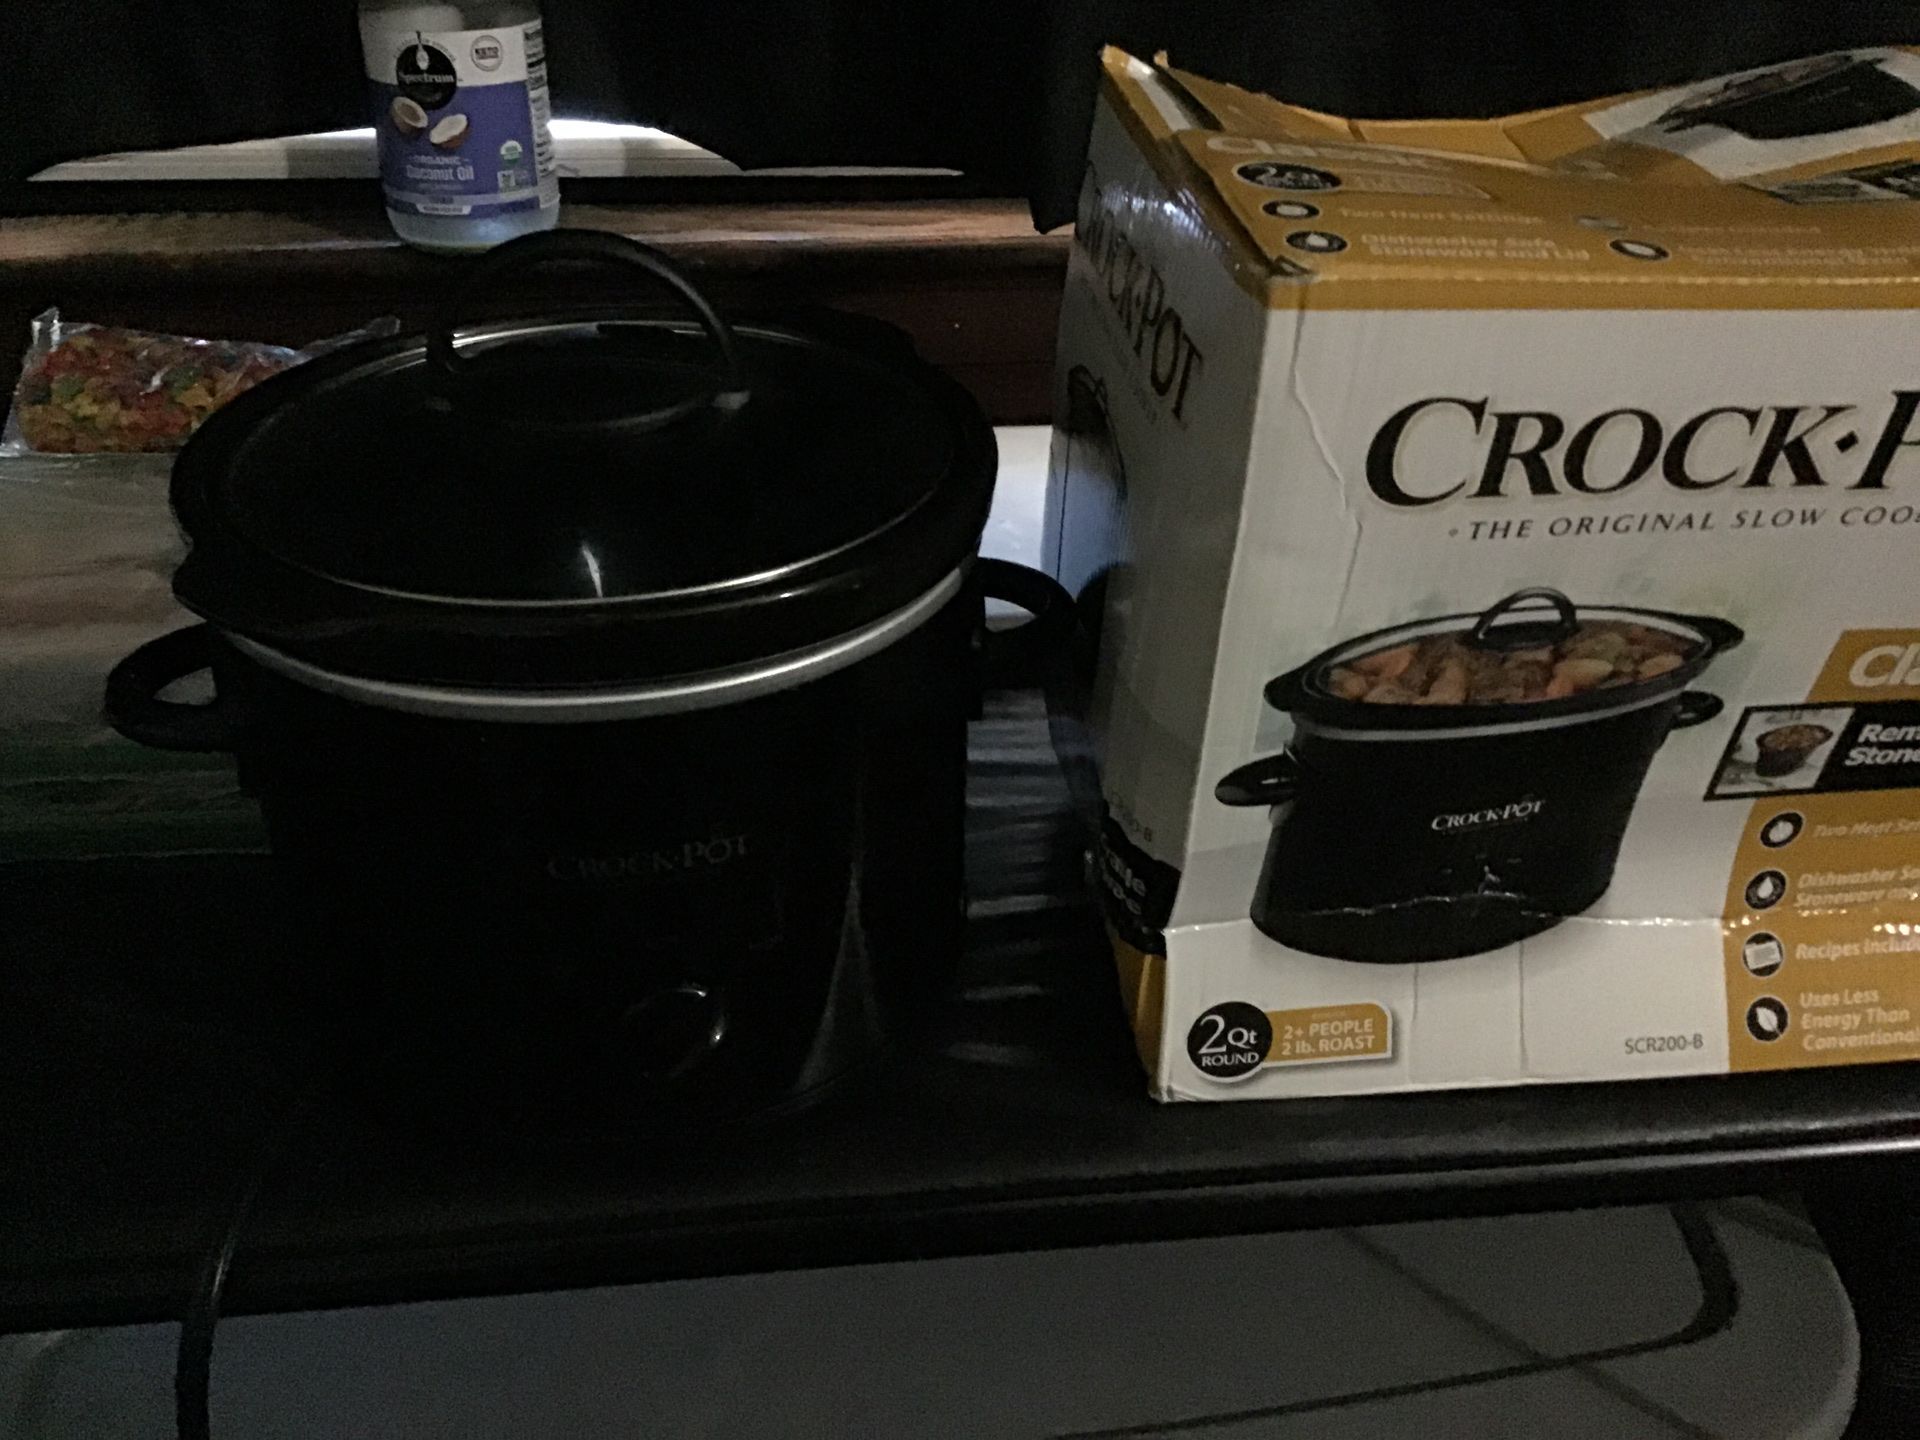 Classics slow cook crock pot